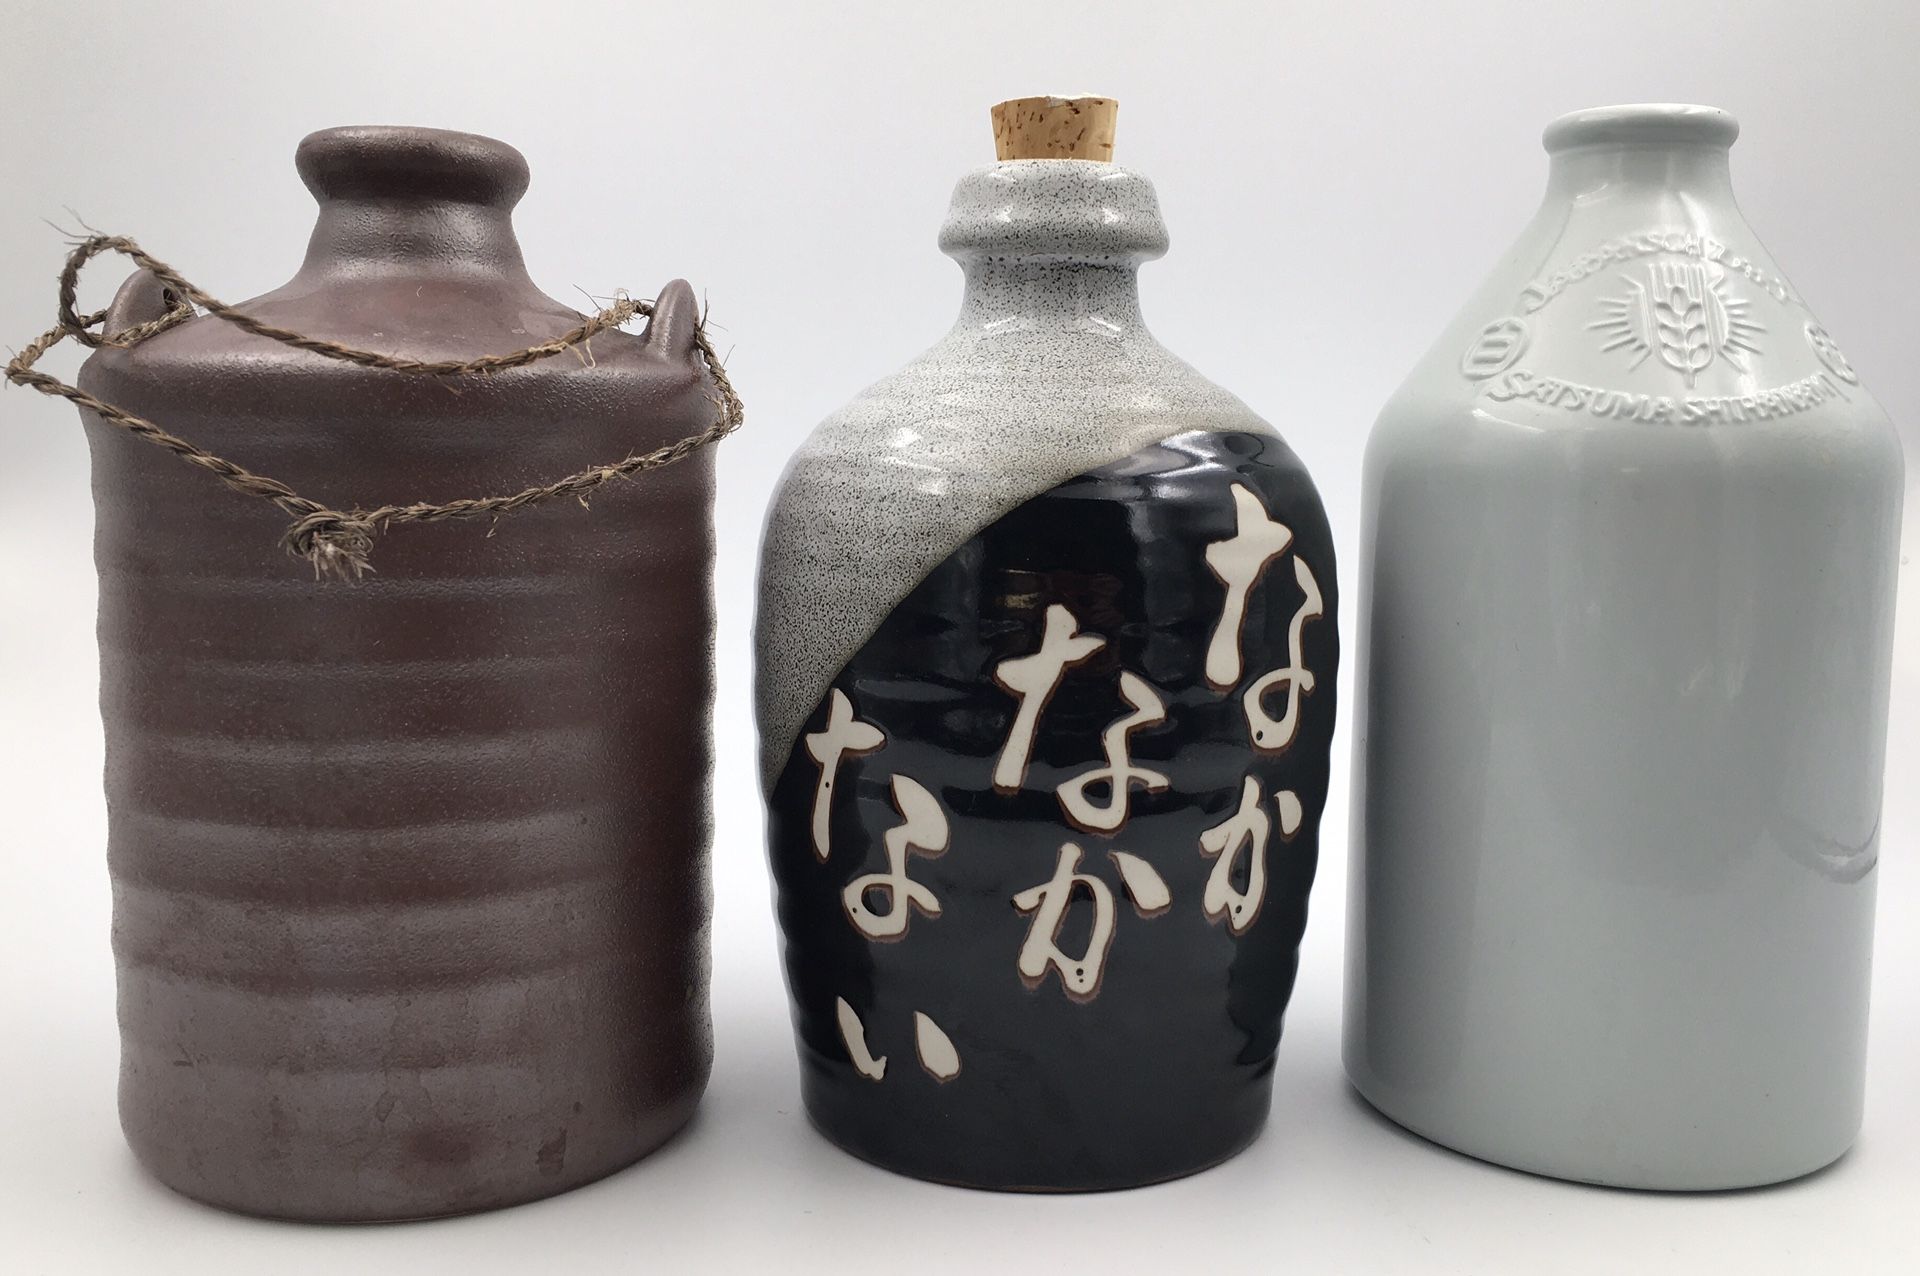 Japanese Sake Bottle Base Ware Pottery for house interior decor, flower vase